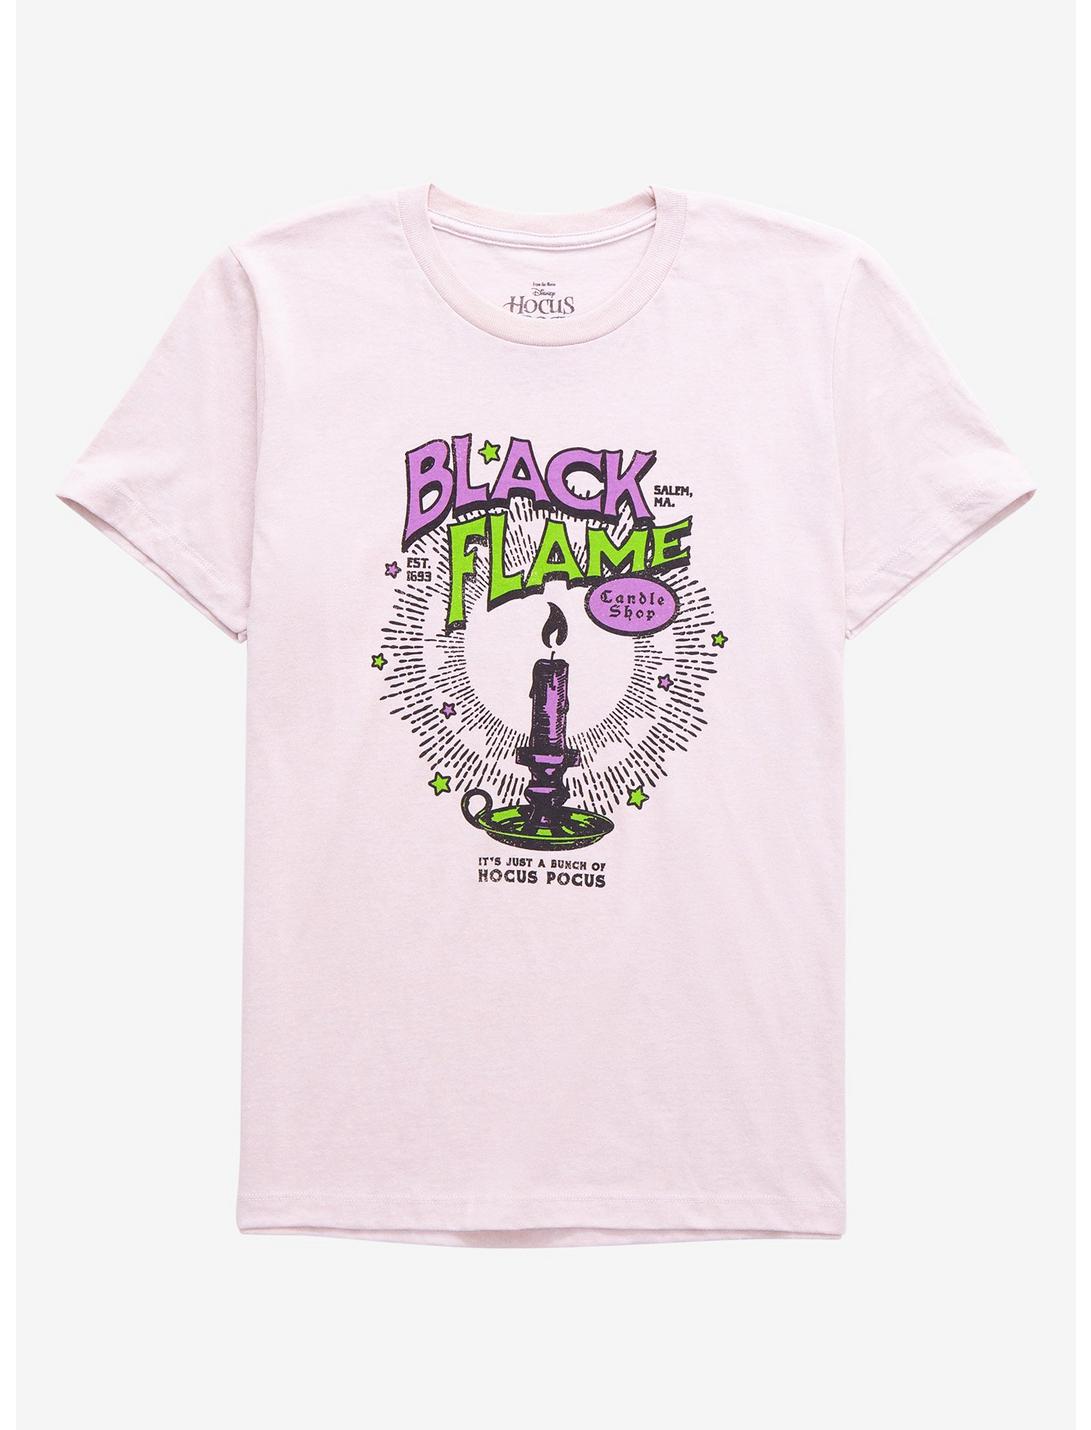 Disney Hocus Pocus Black Flame Candle Shop Women’s T-Shirt - BoxLunch Exclusive, LILAC, hi-res